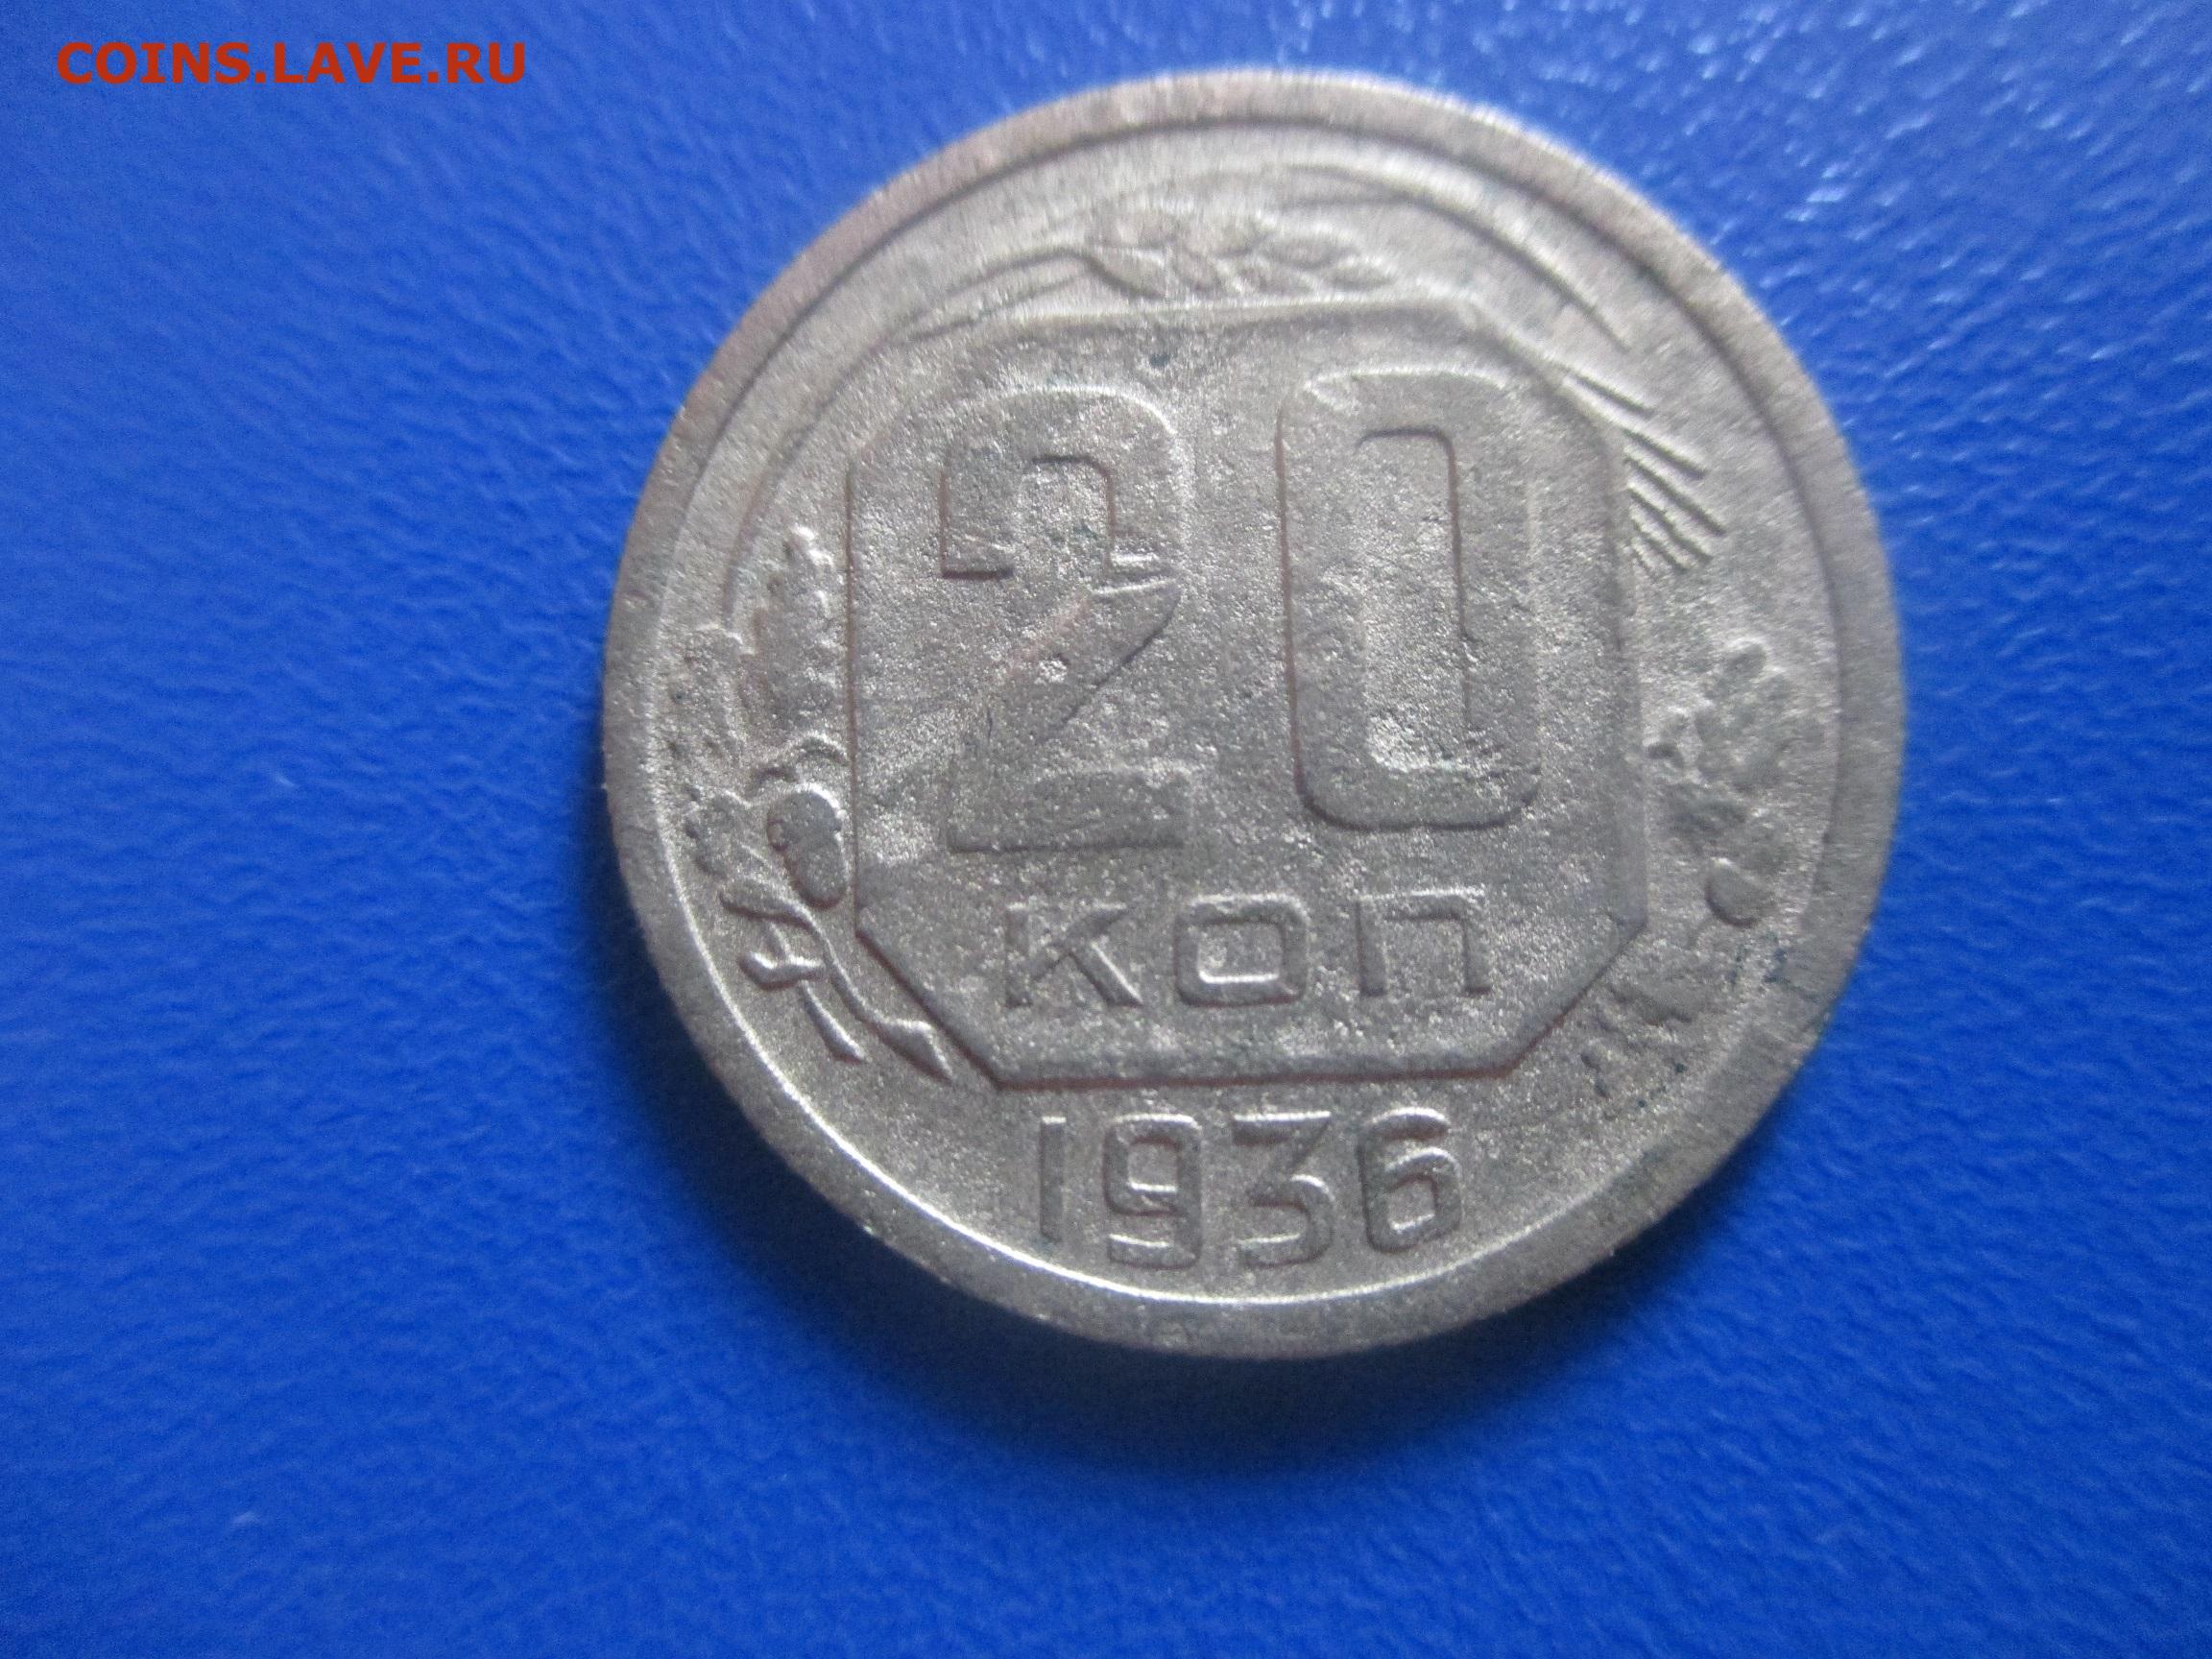 20 копеек 1936. 20 Копеек 1936 года. Монеты 1936 года. 3 Копейки 1936. 20 Копеек СССР по годам.